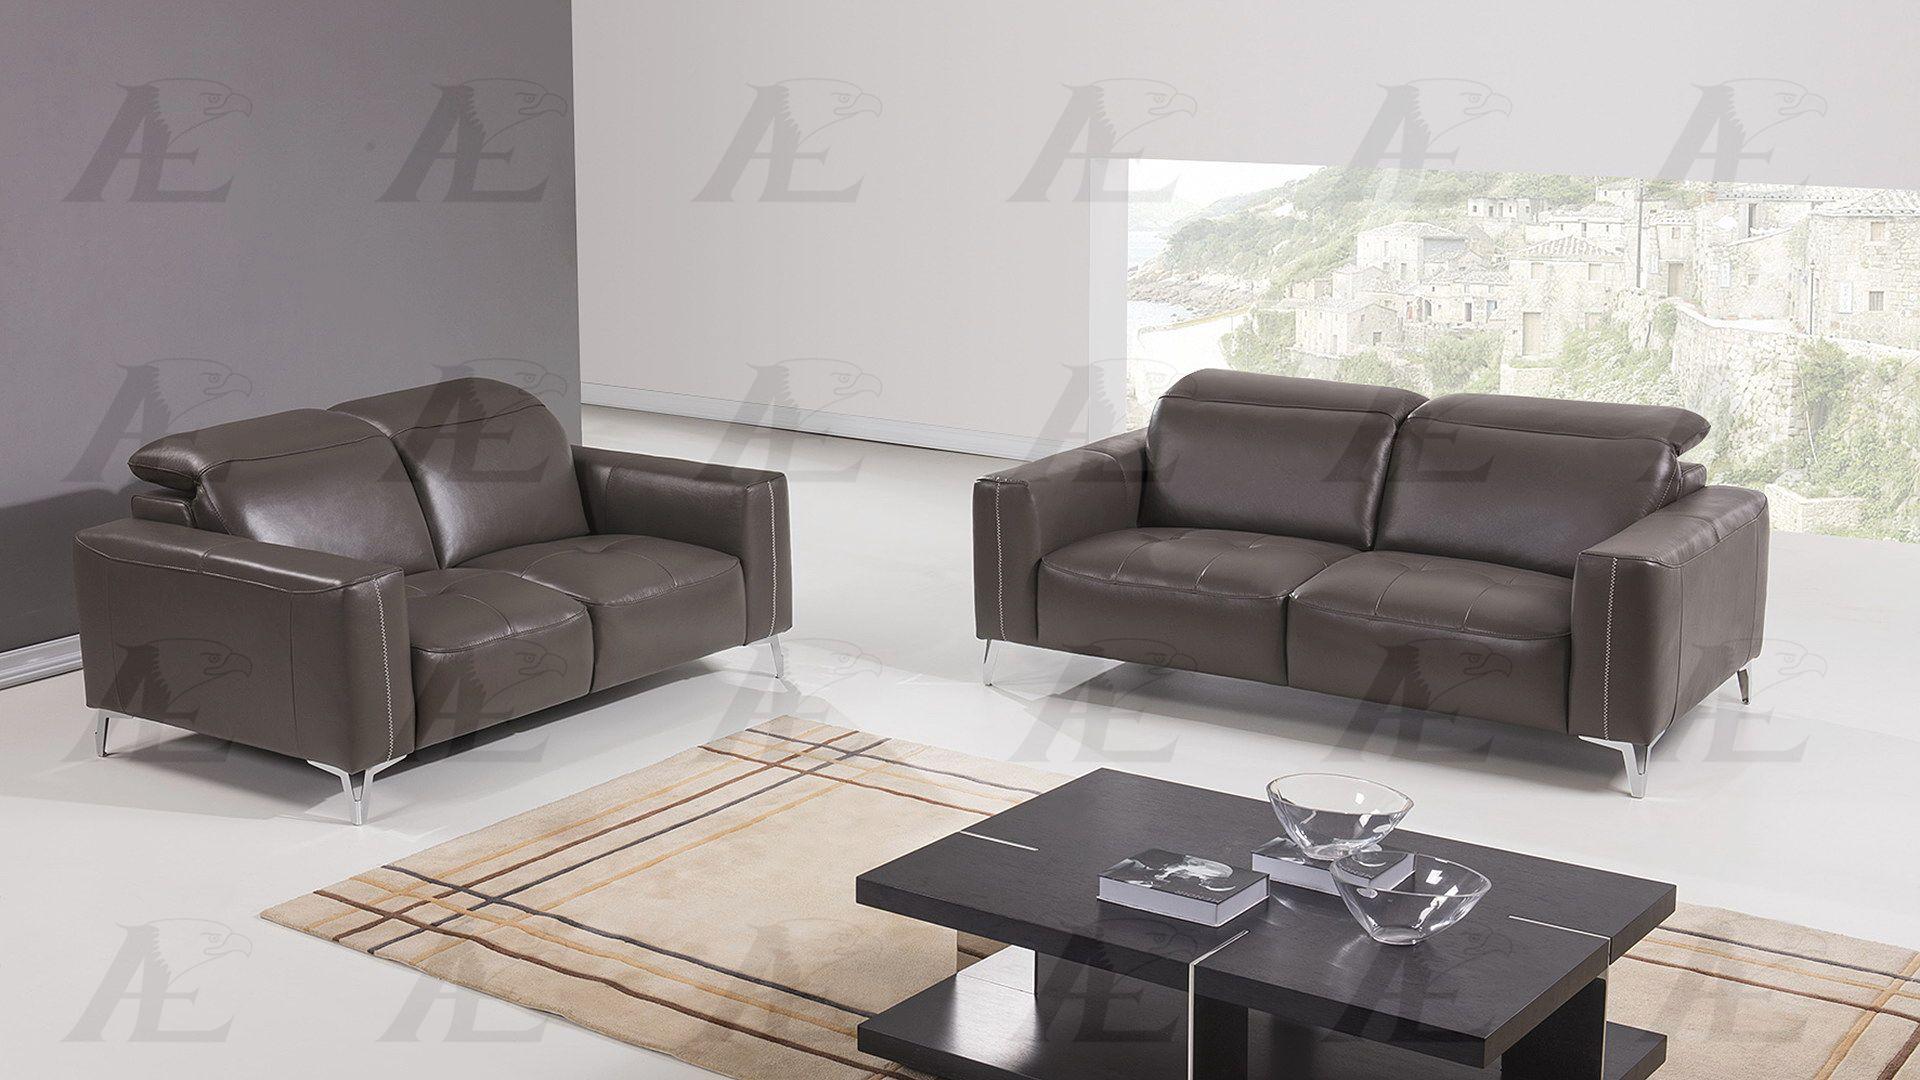 

    
American Eagle Furniture EK069-TPE Taupe Sofa and Loveseat Set Italian Full Leather 2Pcs
